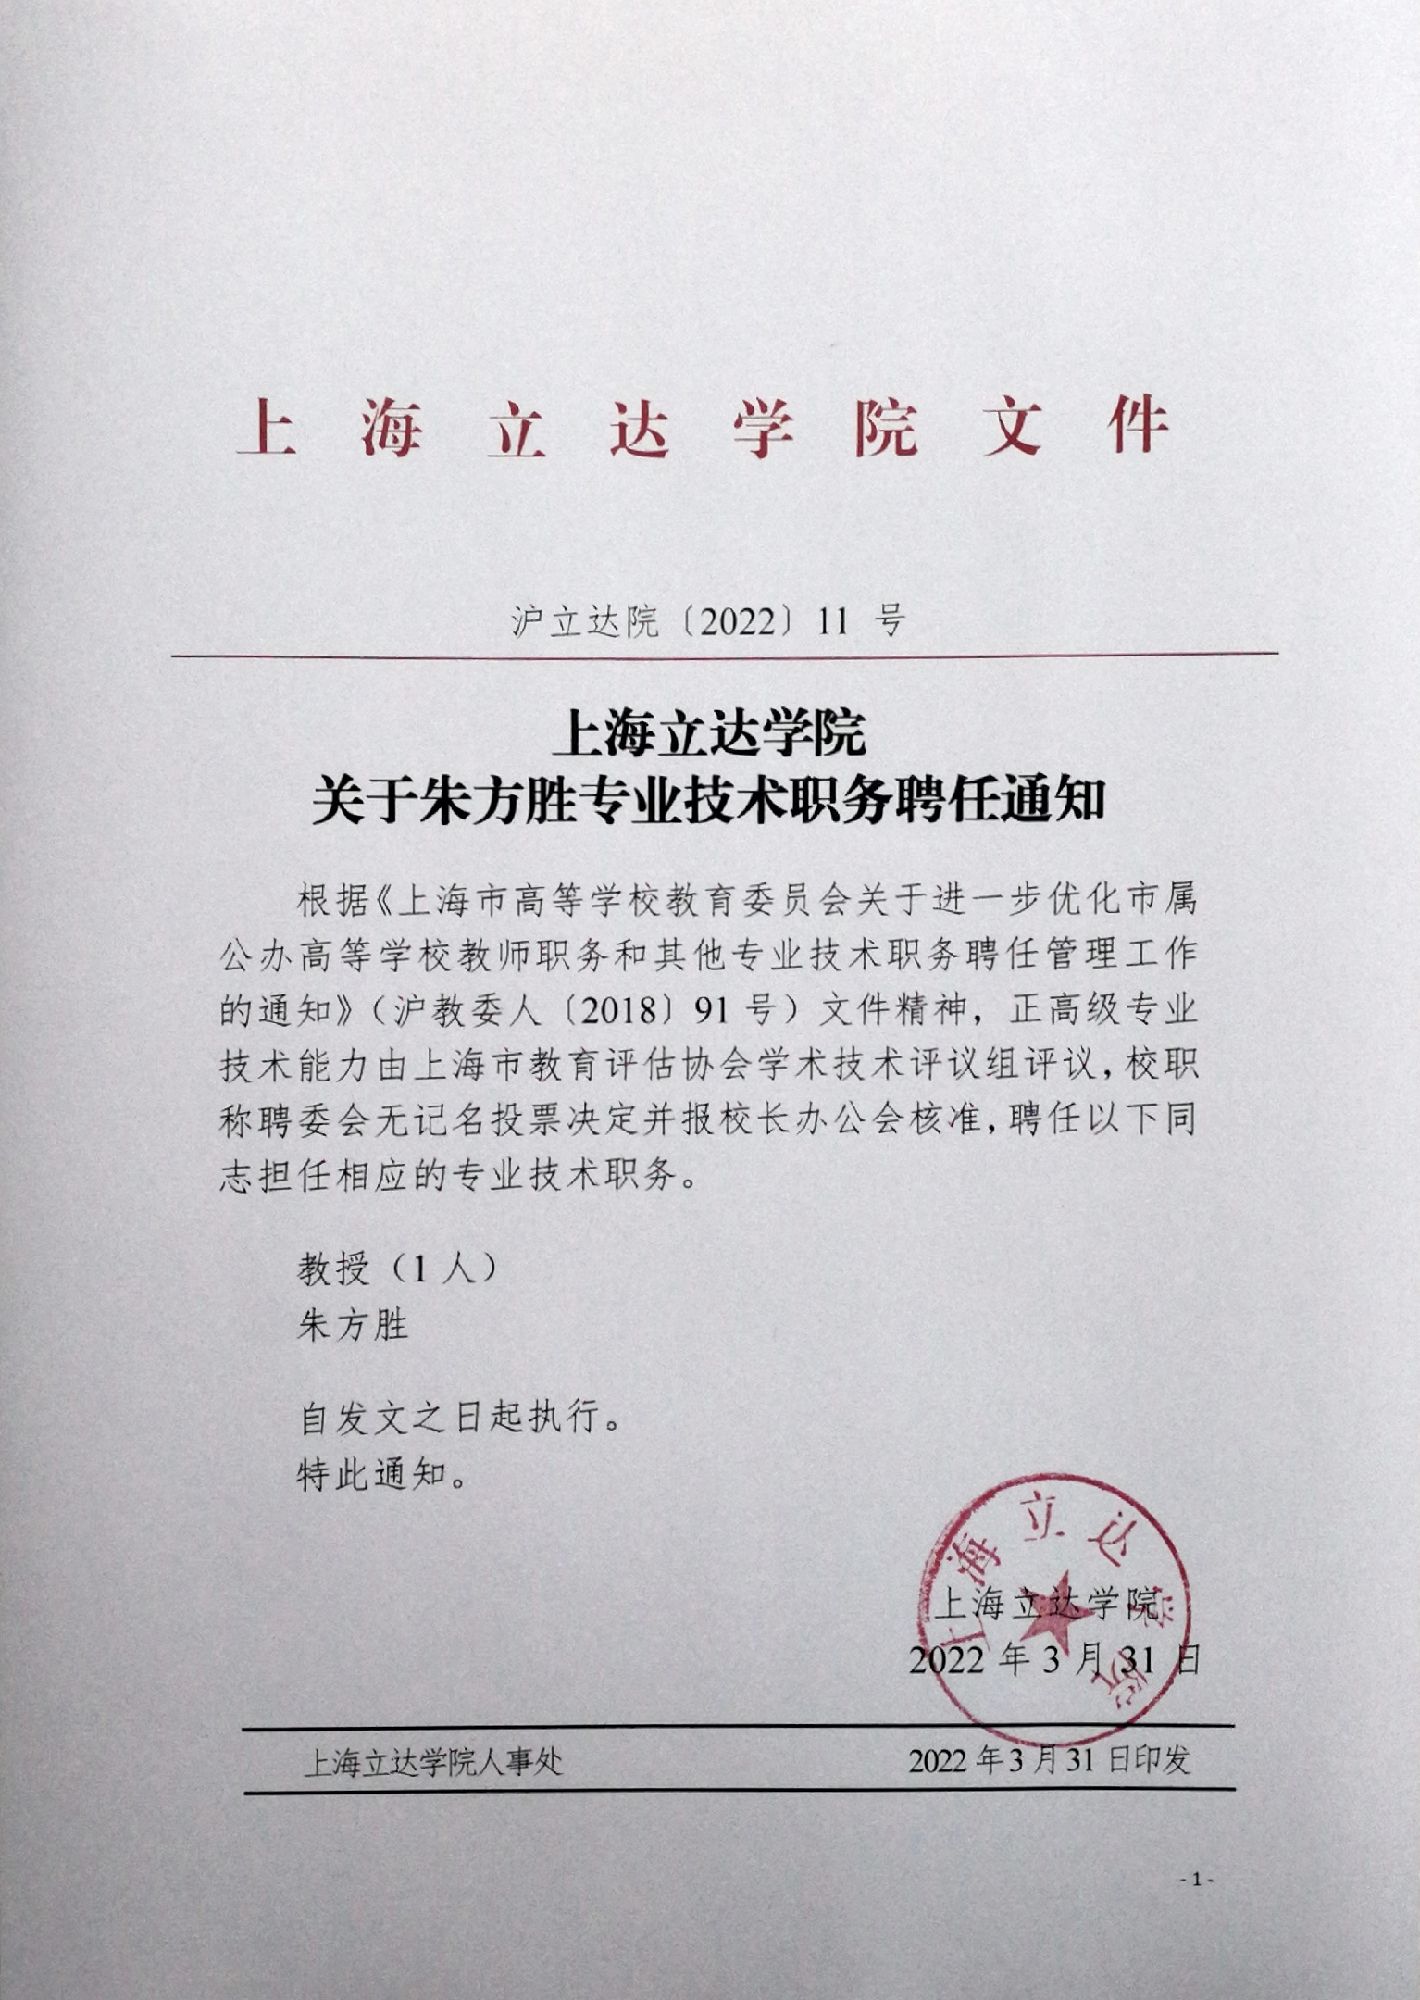 上海立达学院关于朱方胜专业技术职务聘任的通知